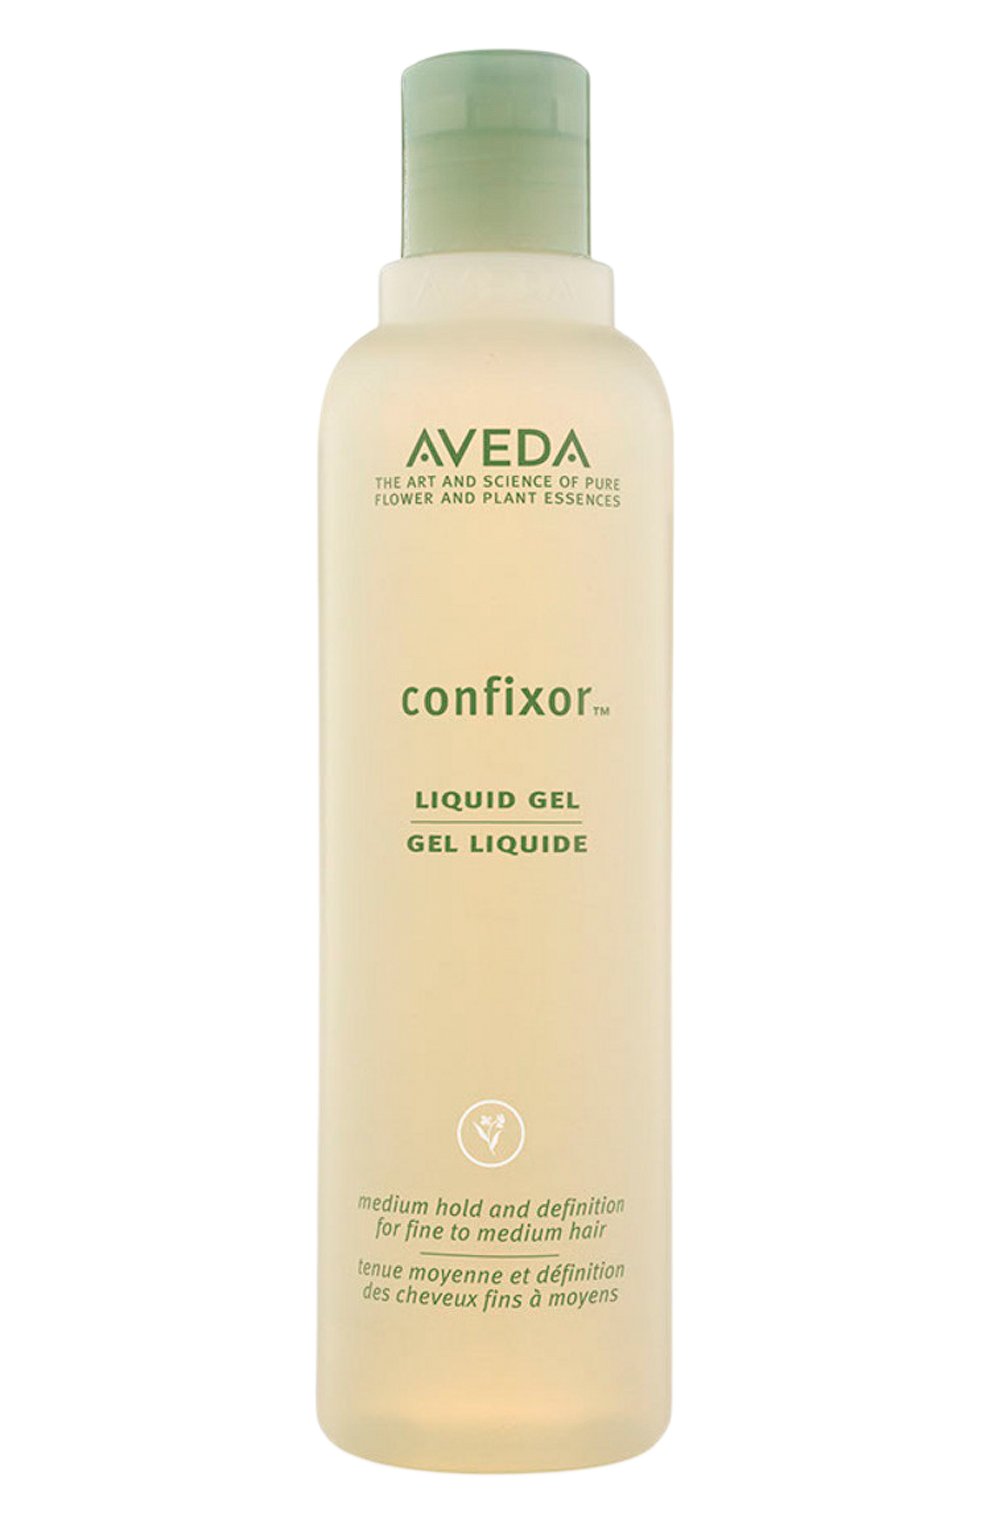 Средства для завитка волос. Aveda Confixor гель жидкий Liquid Gel, средняя фиксация отзывы. Aveda Confixor Liquid Gel.